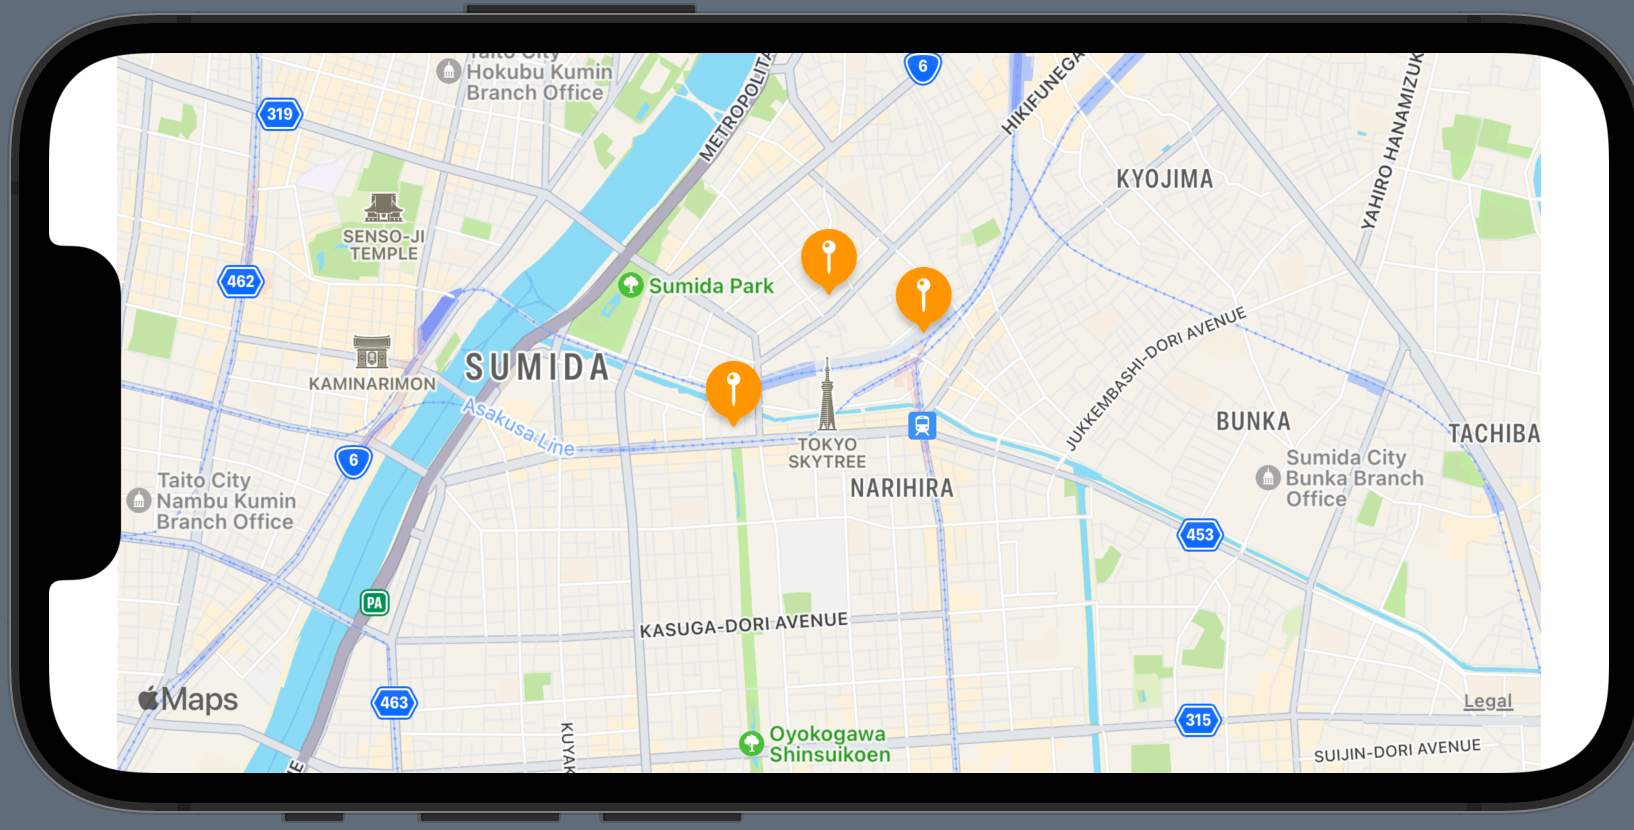 SwiftUIのMapKitで表示した東京スカイツリー周辺のアノテーション